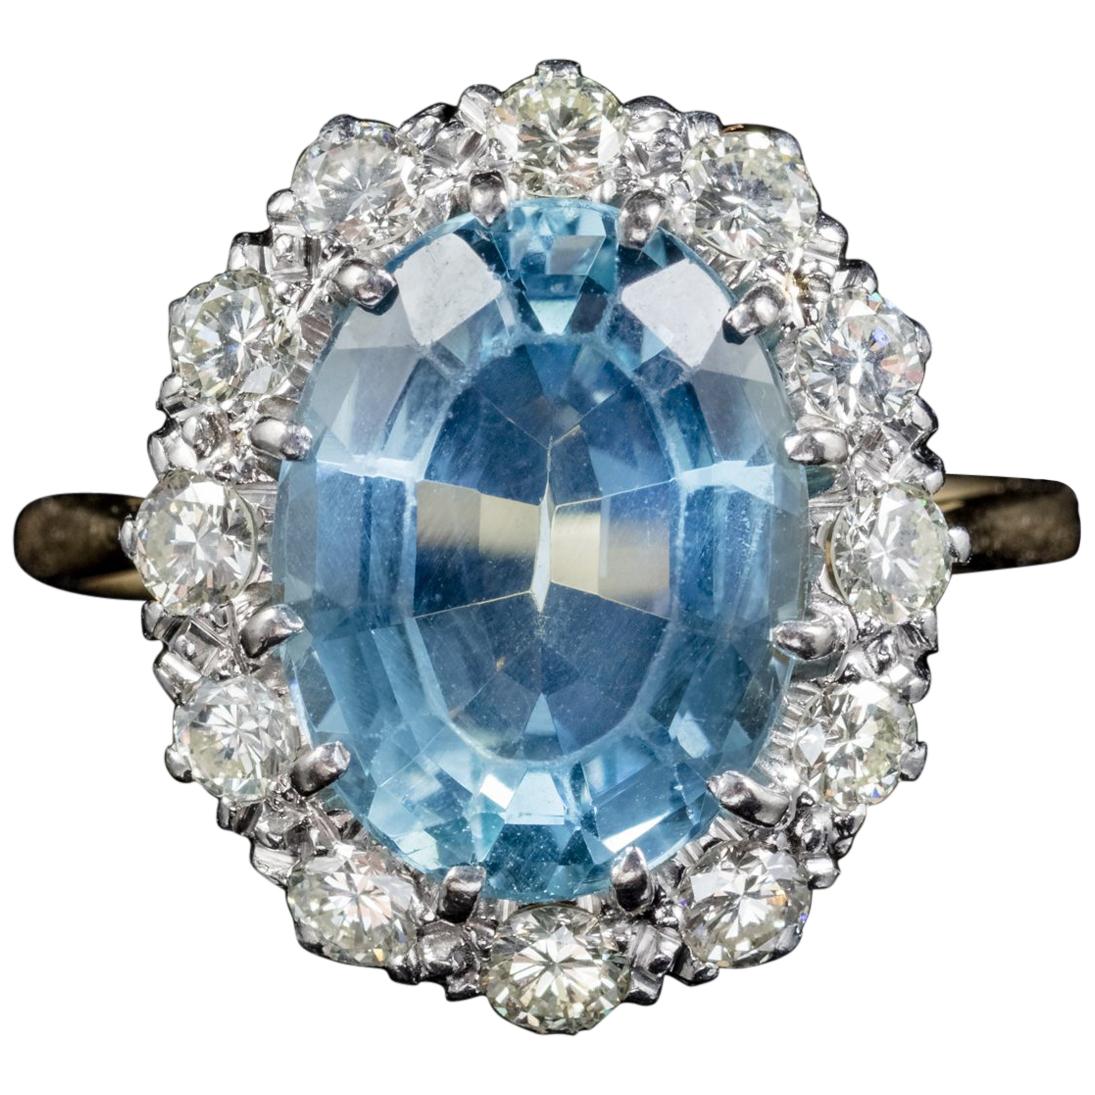 Antique Victorian Aquamarine Diamond Ring 18 Carat Gold Platinum, circa 1900